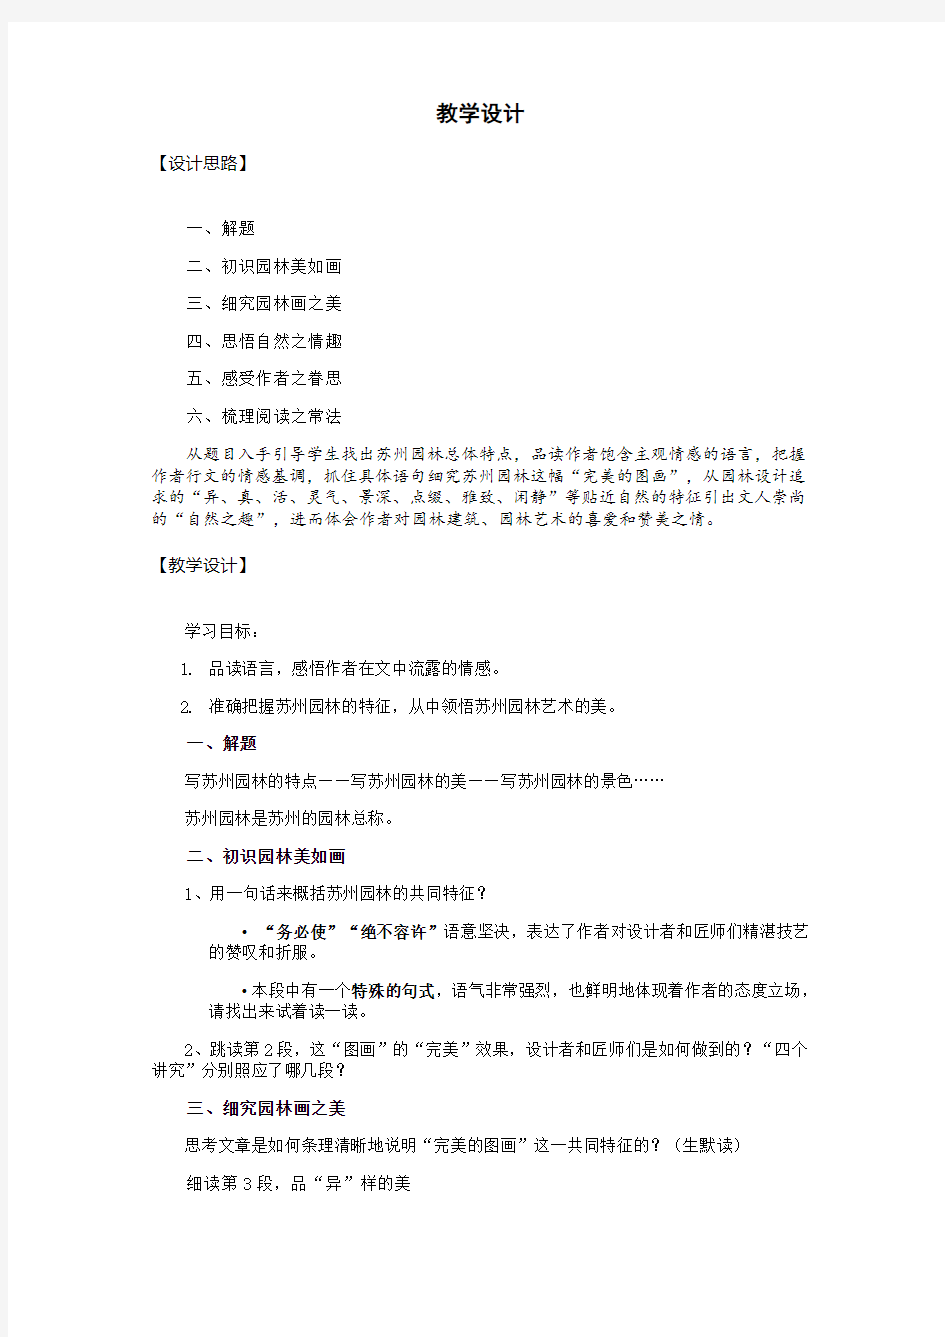 初中语文_苏州园林教学设计学情分析教材分析课后反思